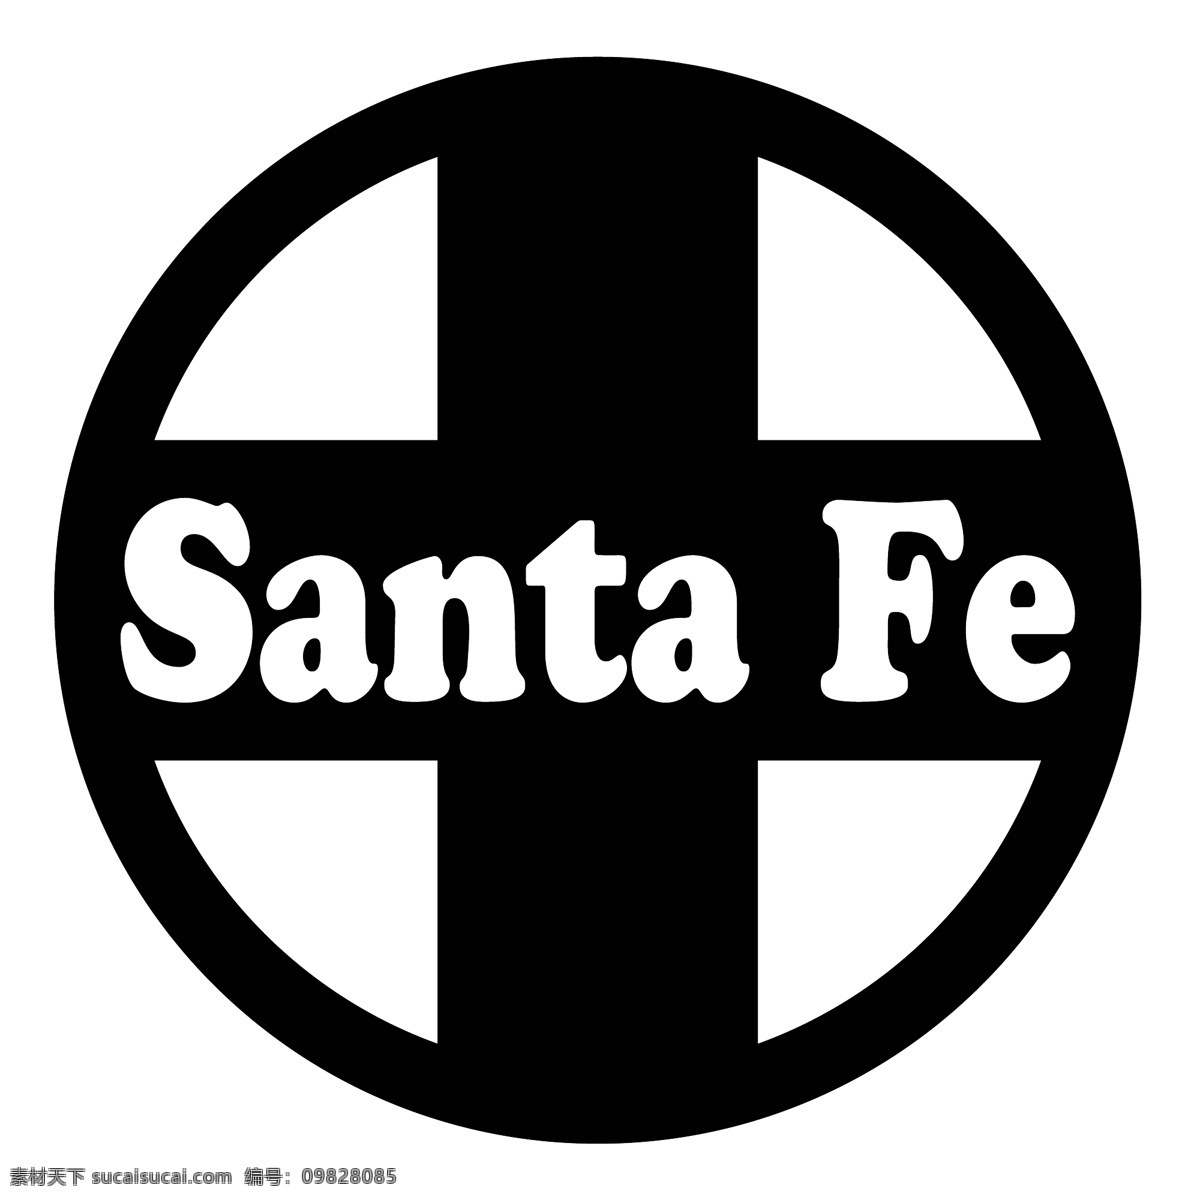 标志 圣诞老人 矢量标志 矢量 埃斯库多 圣达菲 埃斯库多de santa fe 免费 de 班德拉圣达菲 向量